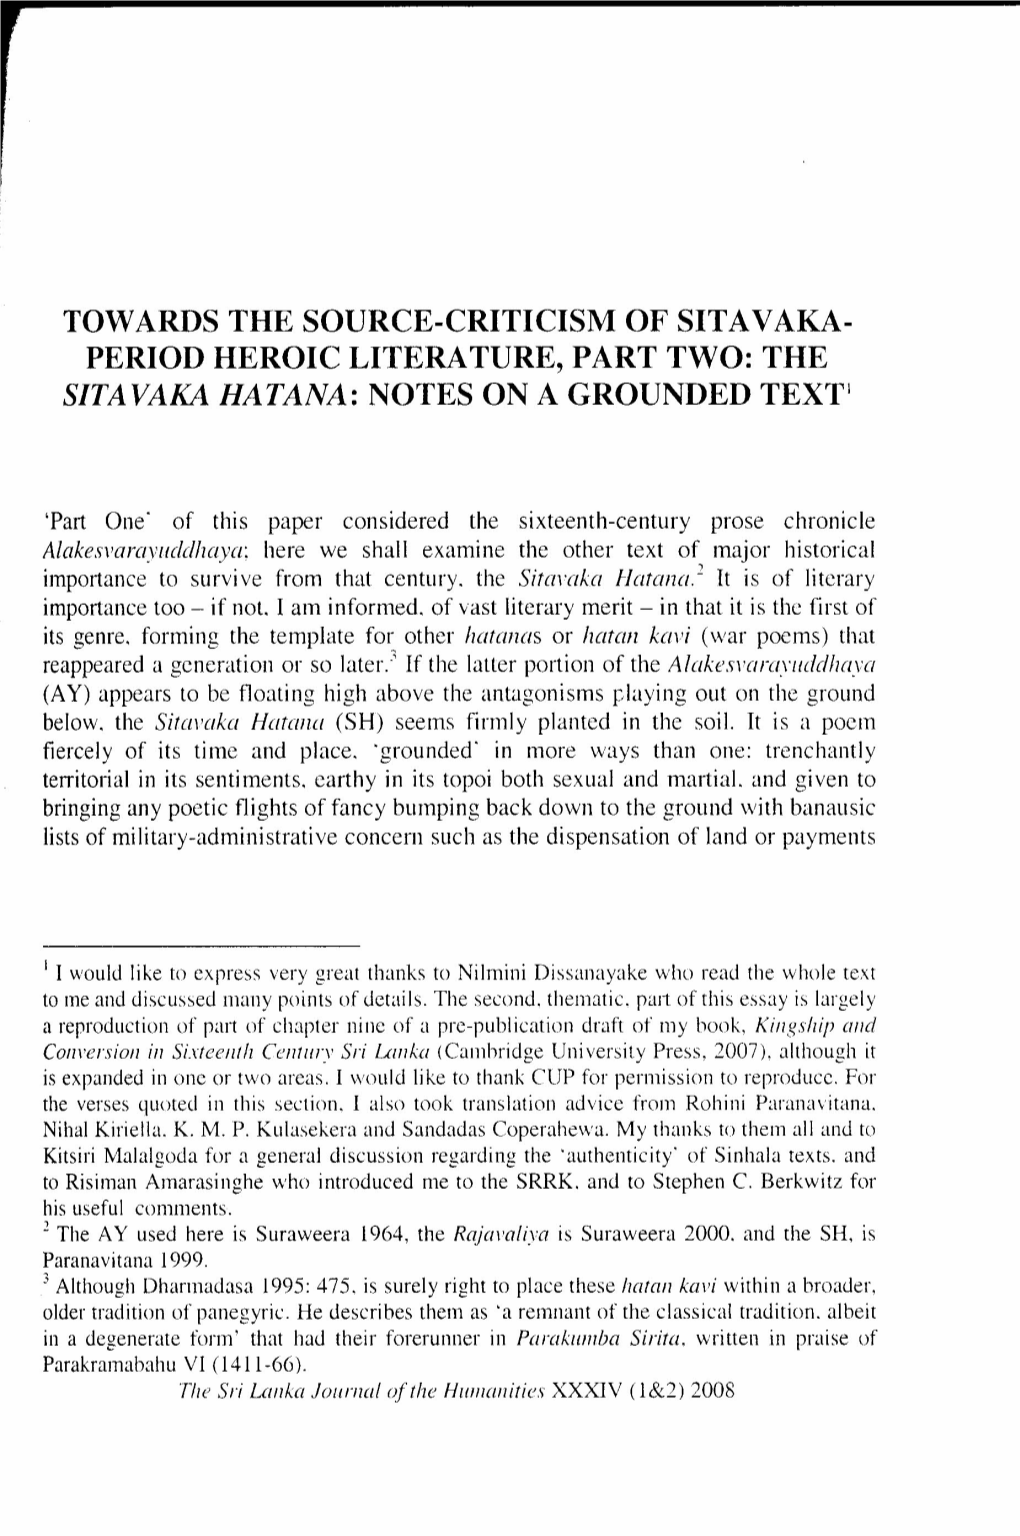 THE SITAVAKA HATANA: NOTES on a GROUNDED Texr